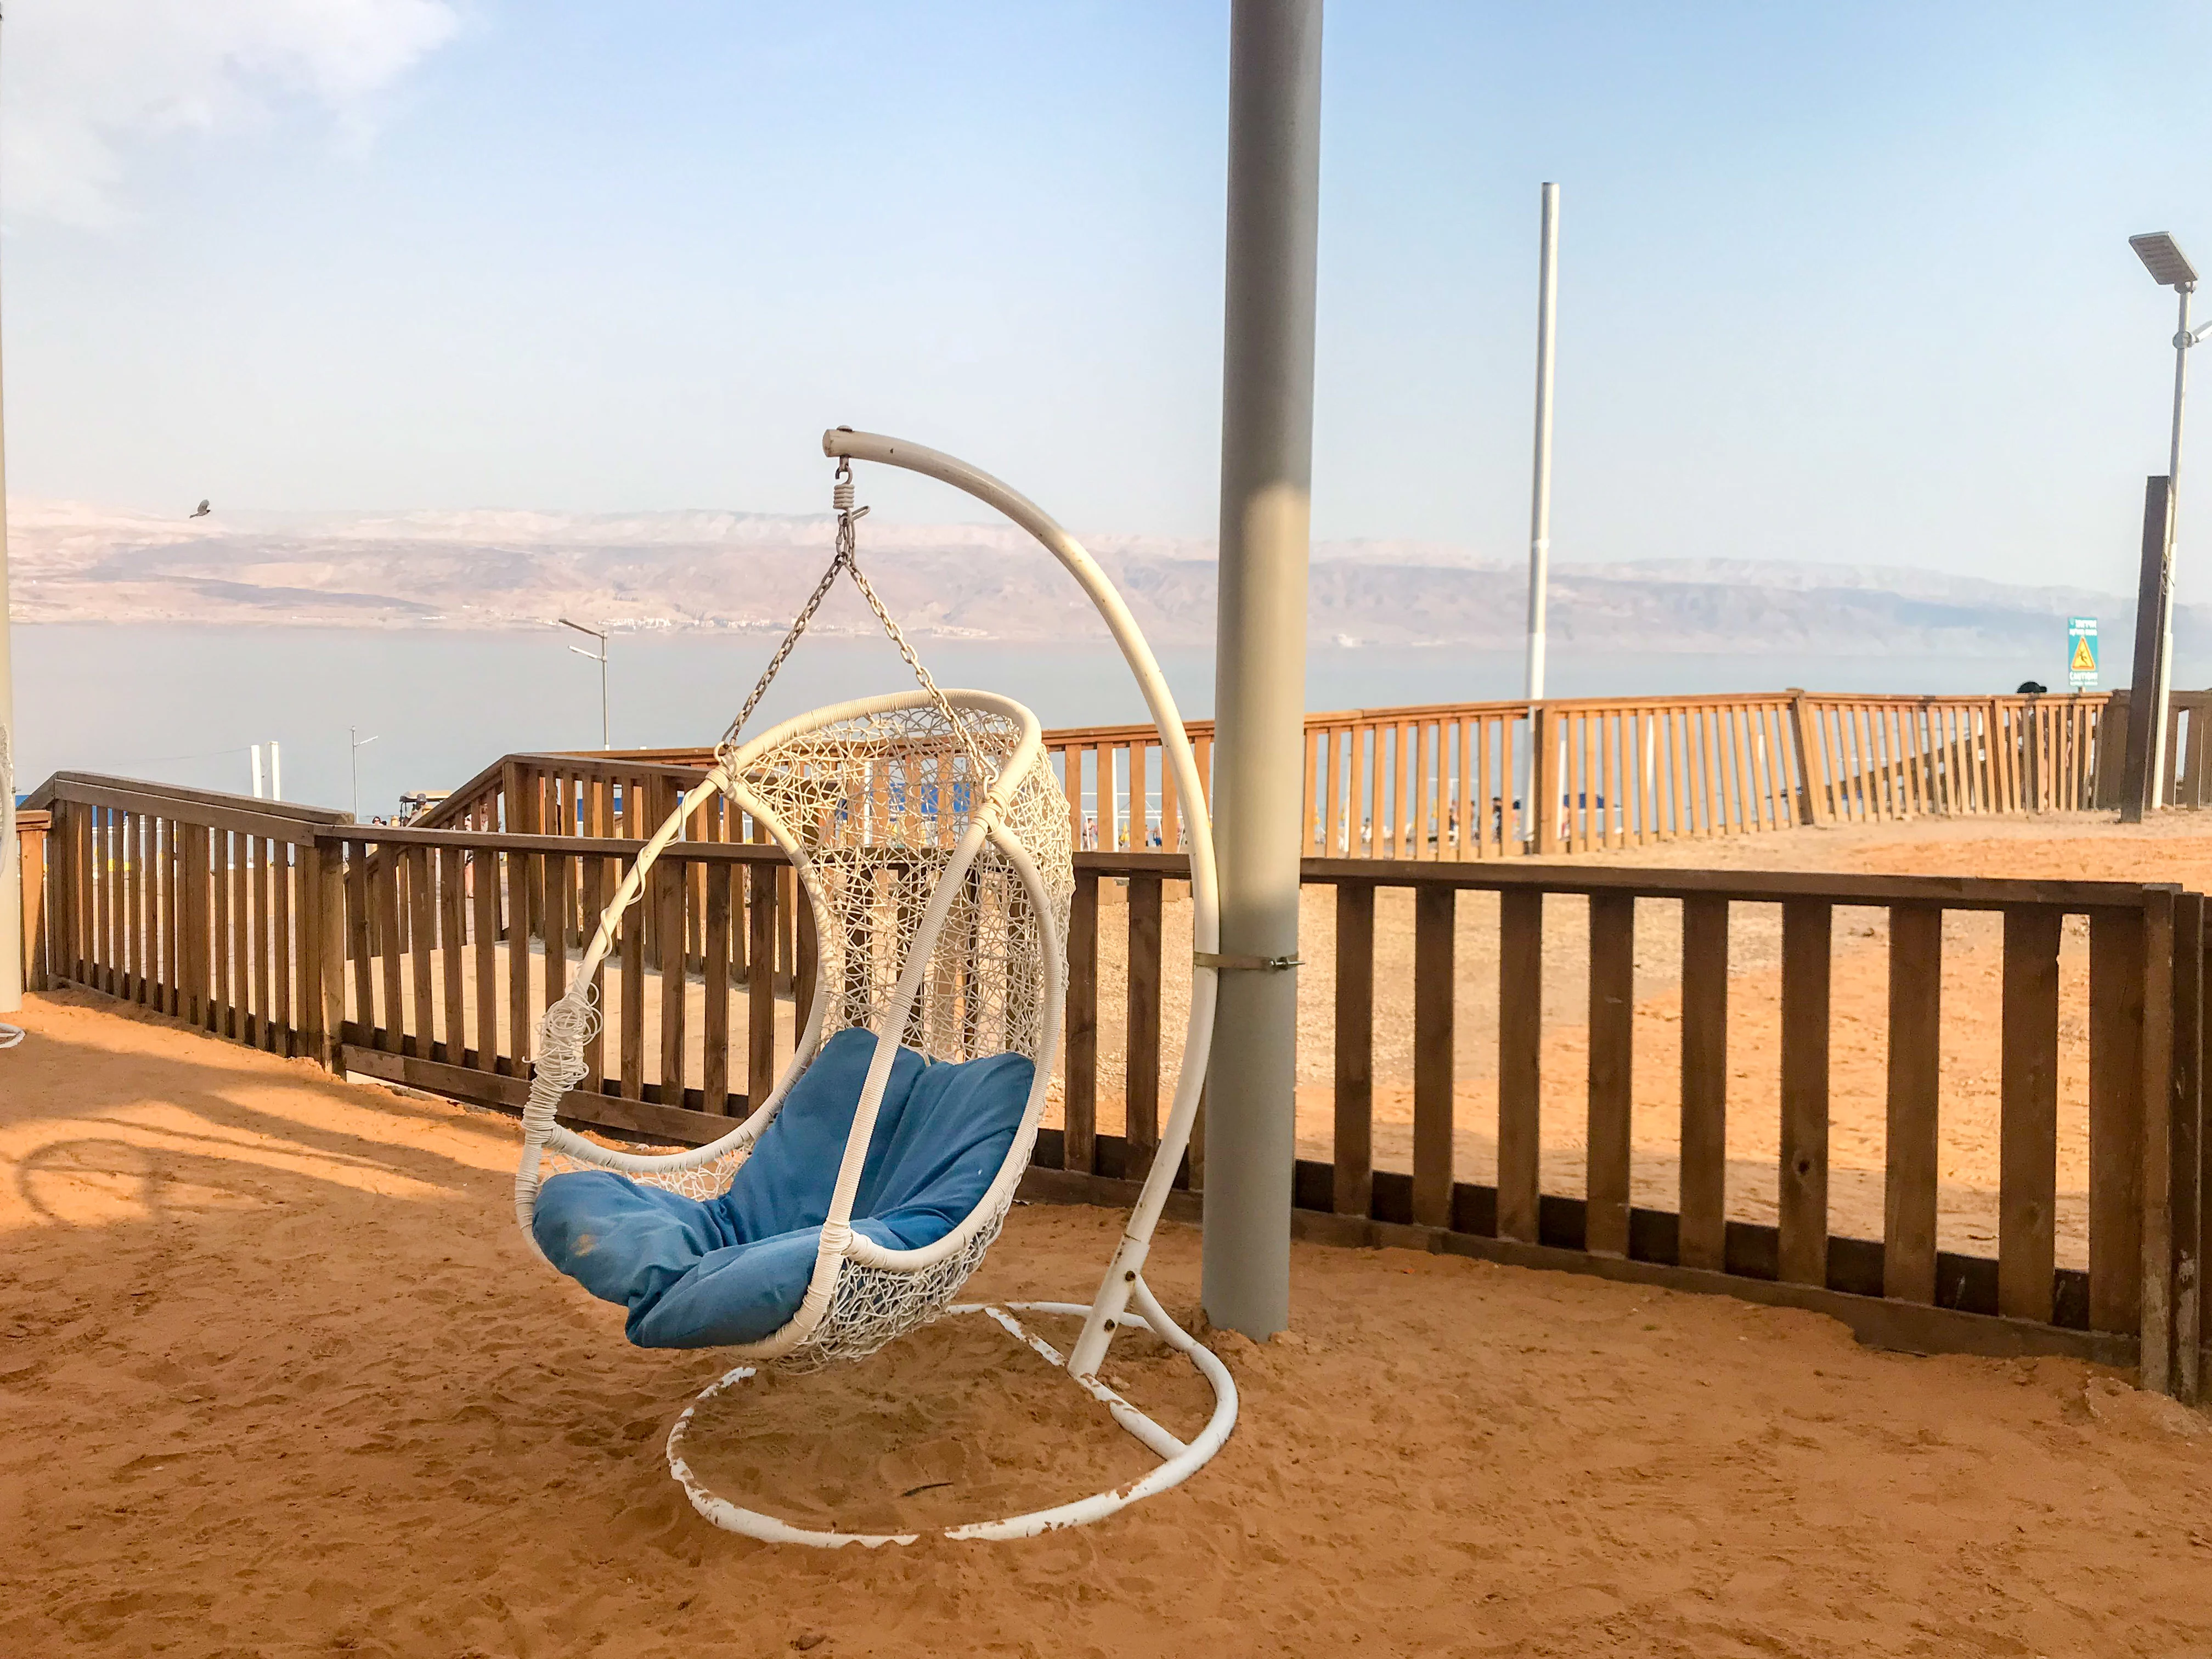 Jerusalem Kids - Dead Sea Day Trip